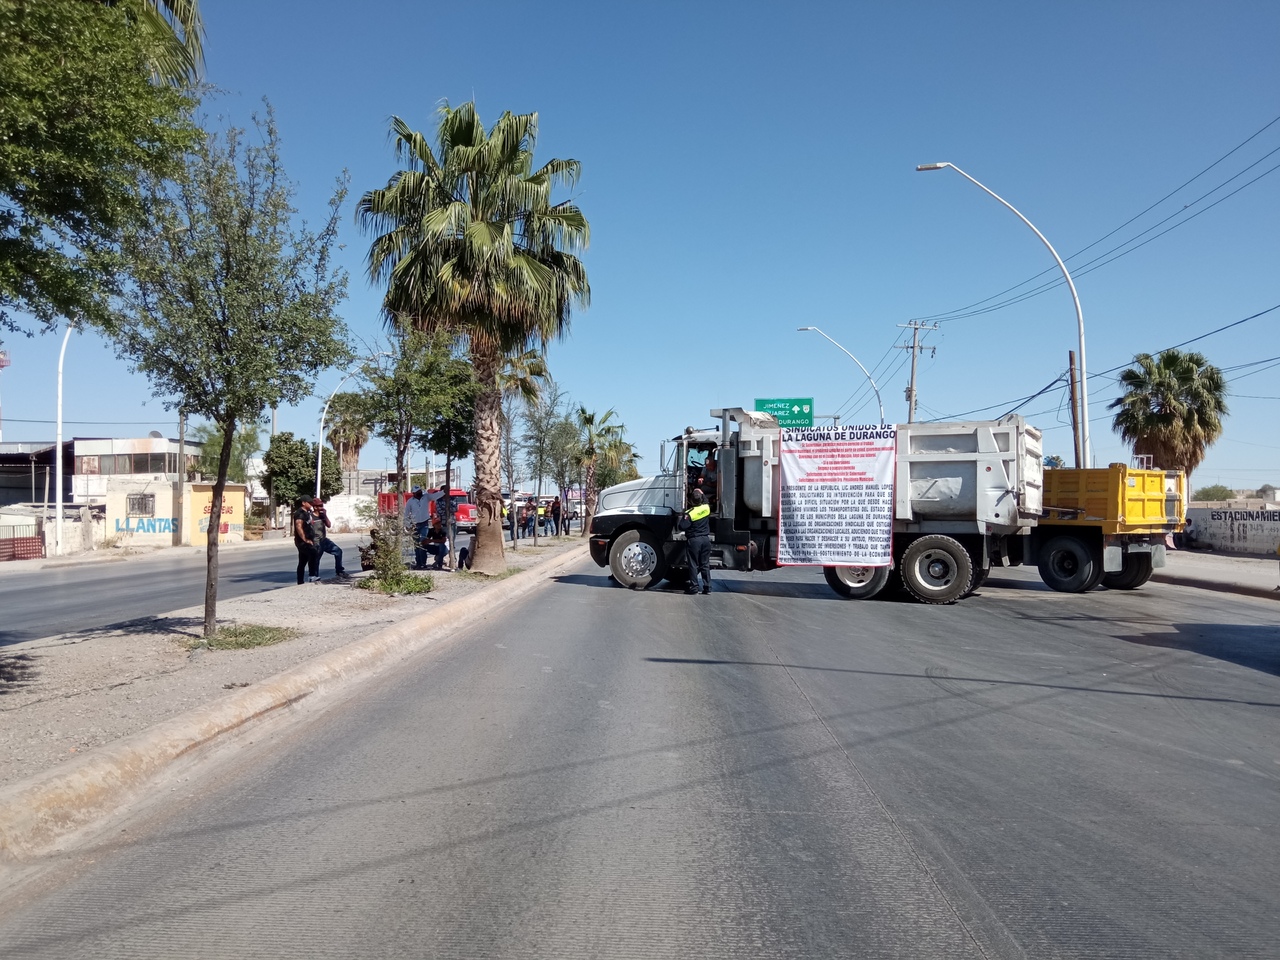 De forma simultánea se bloqueó tanto la carretera Gómez Palacio- Jiménez , así como el bulevar Forjadores por parte de los materialistas, para exigir garantías de seguridad a las autoridades.